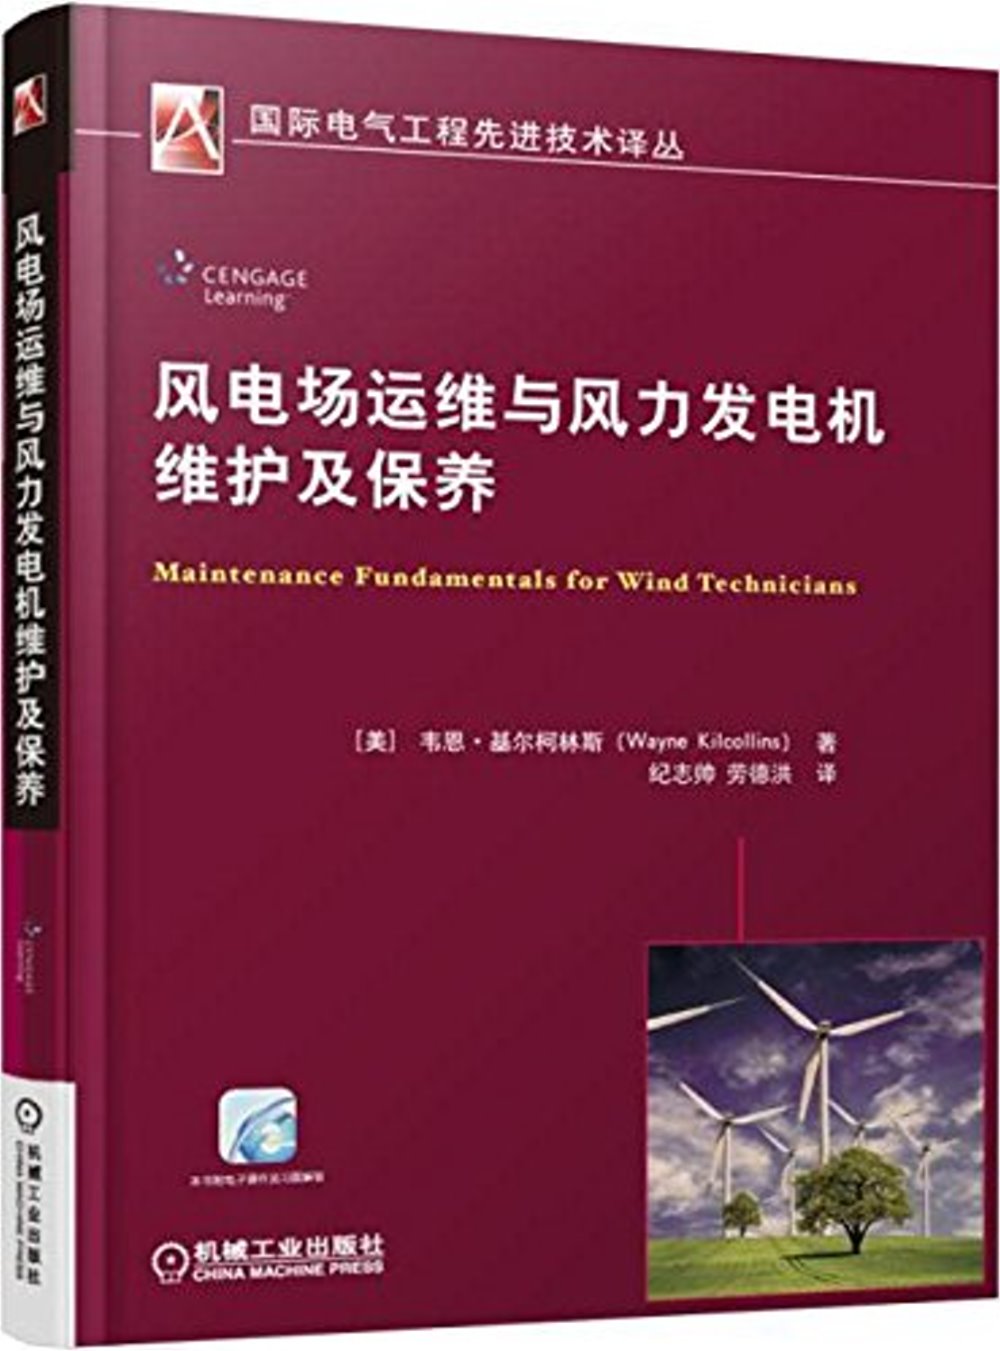 風電場運維與風力發電機維護及保養